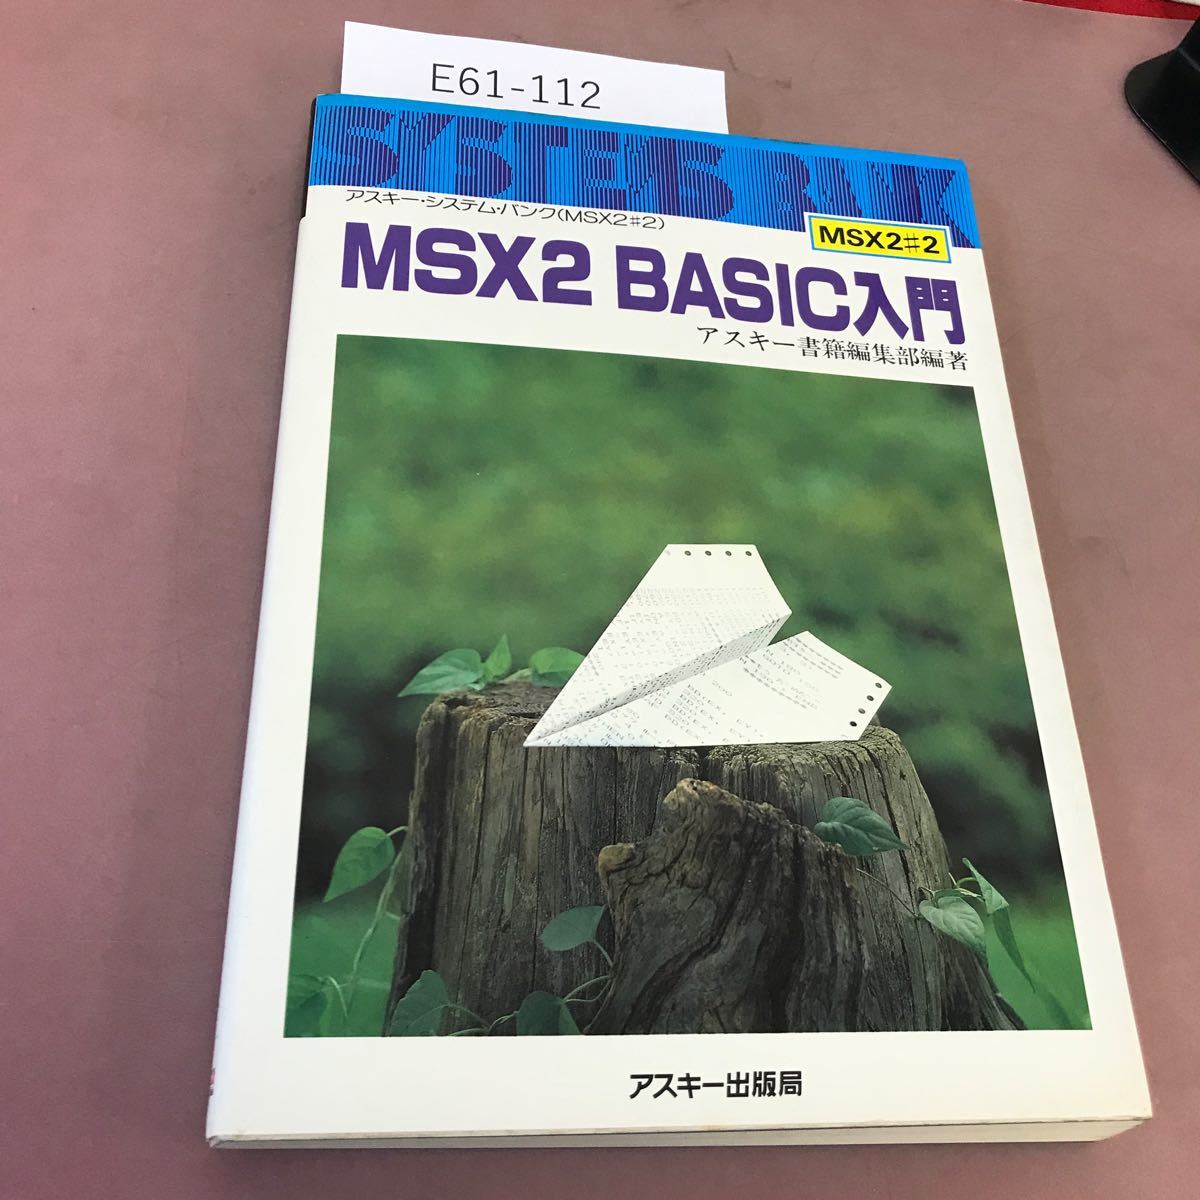 E61-112 ASCII * система * банк MSX2 BASIC введение ASCII выпускать отдел MSX2#2